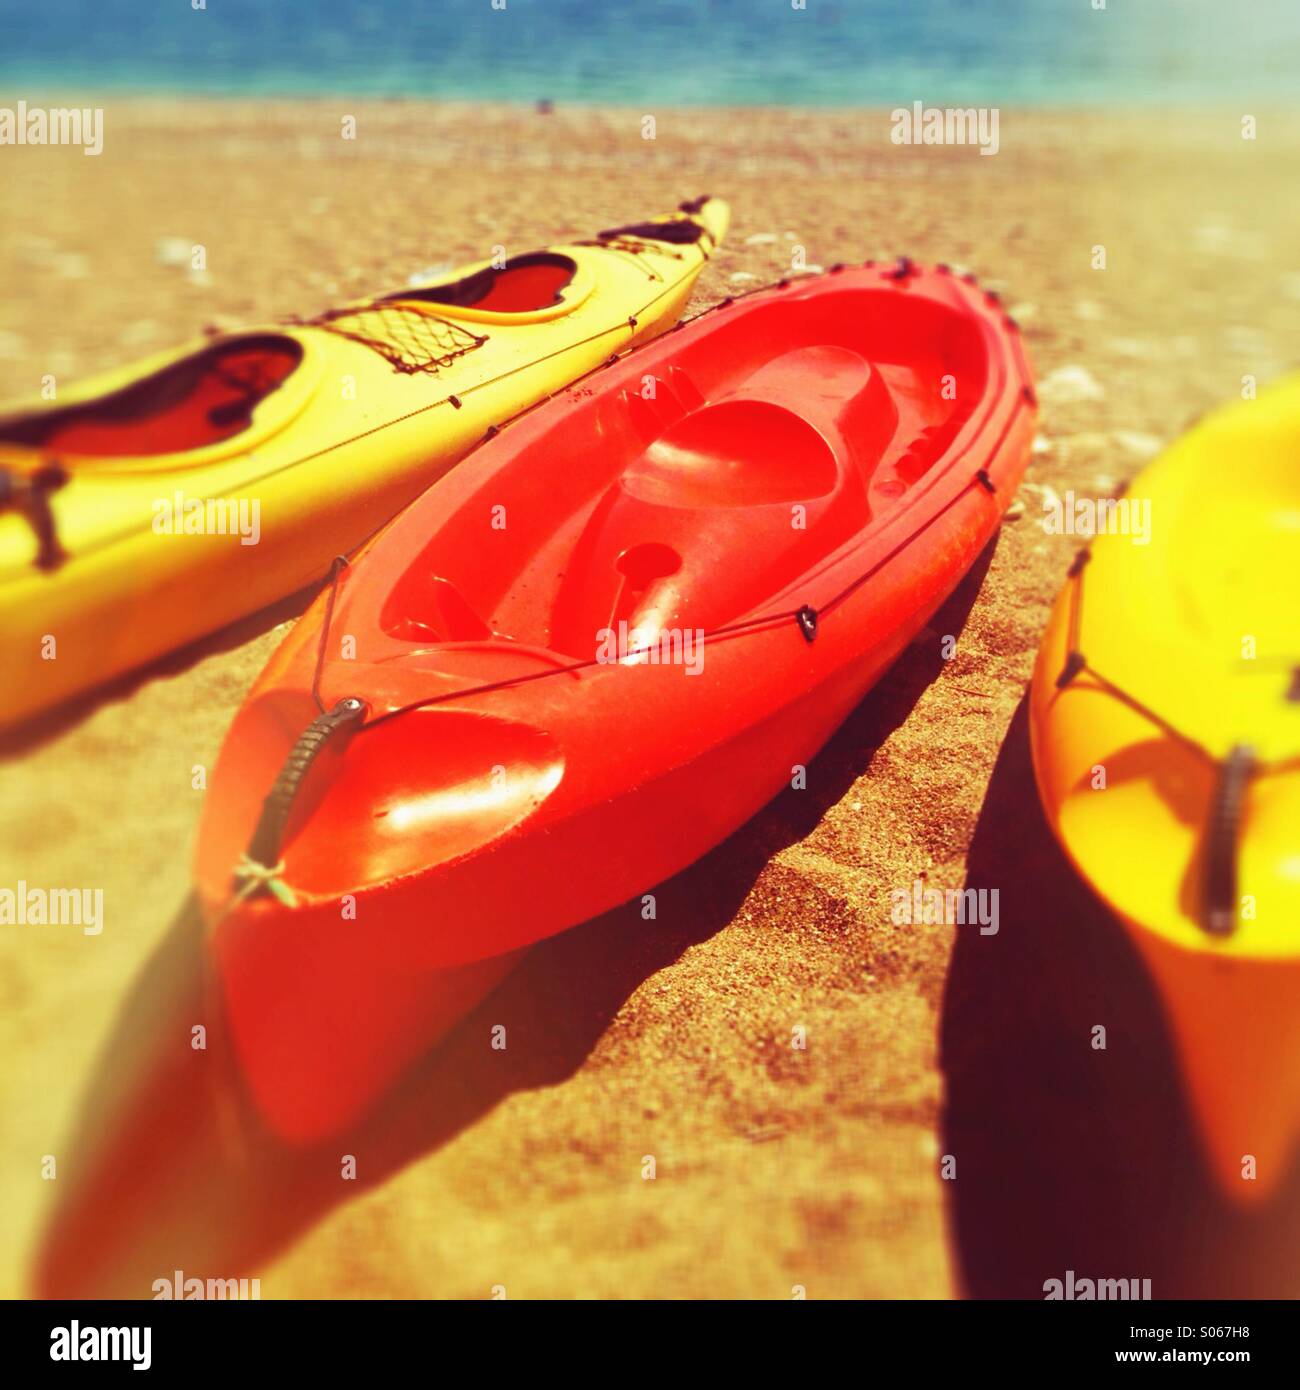 Three kayaks on a beach Stock Photo